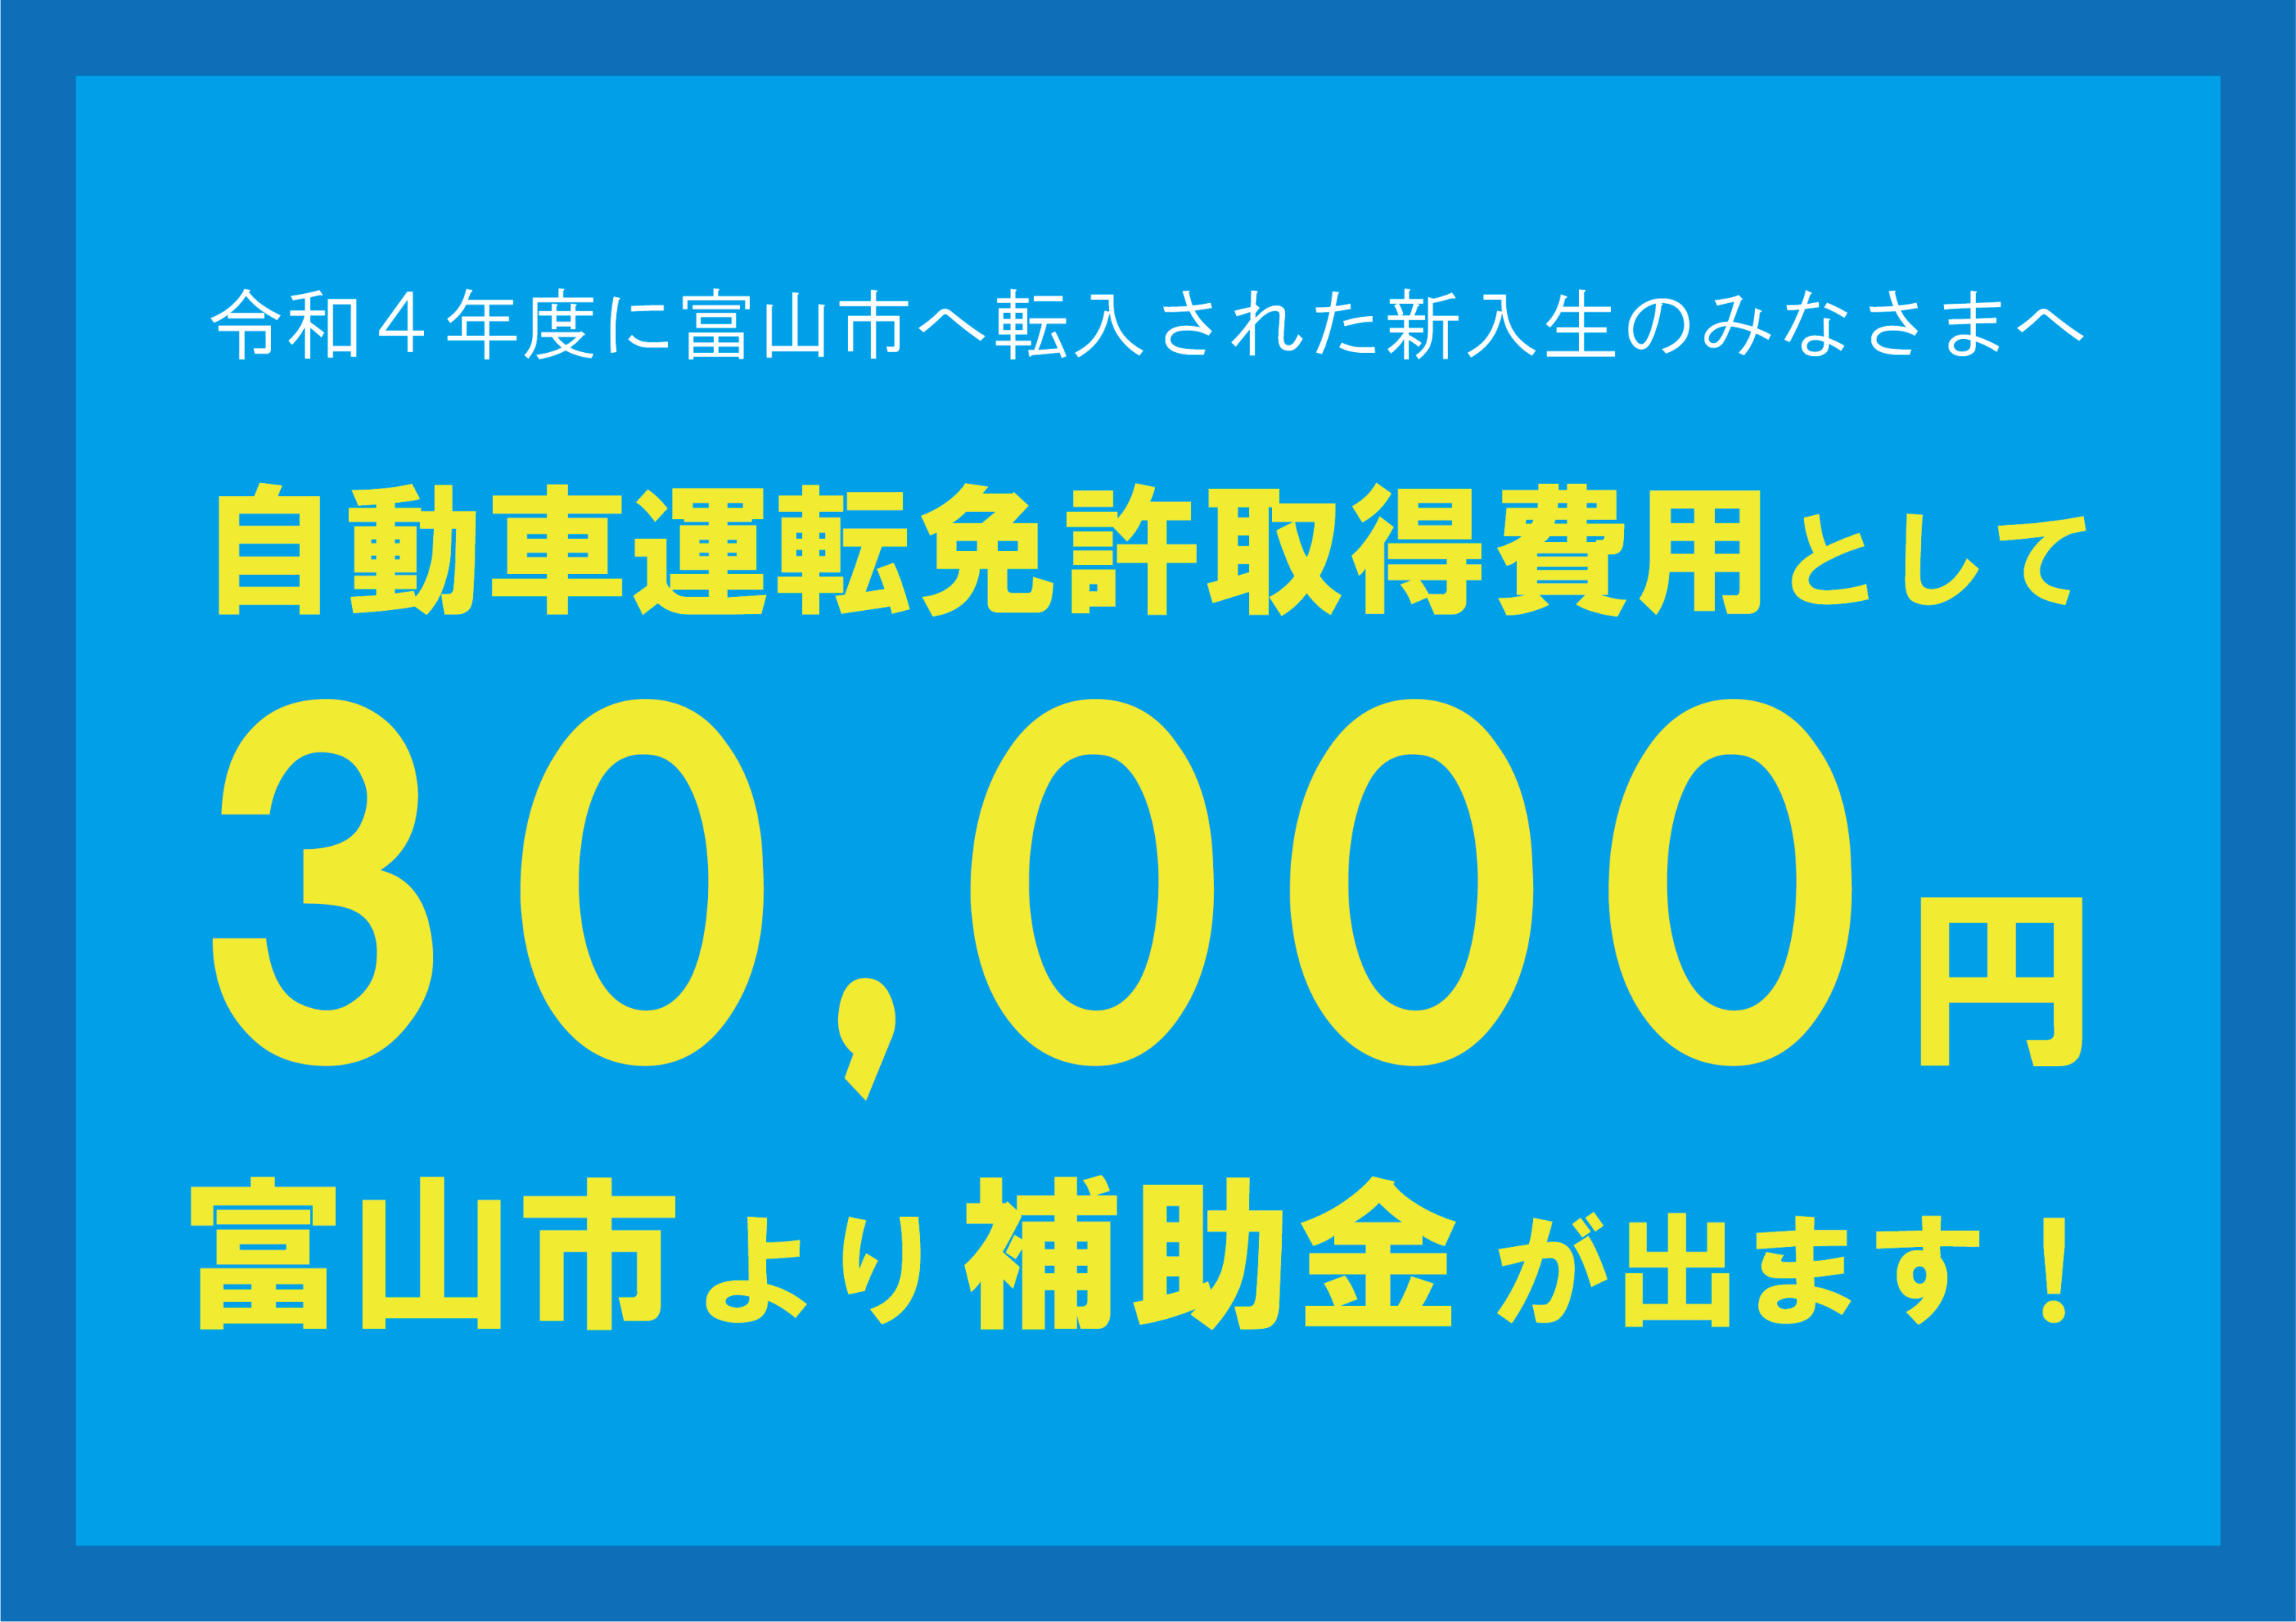 富山市より自動車運転免許取得費用として30,000円の補助金が出ます！